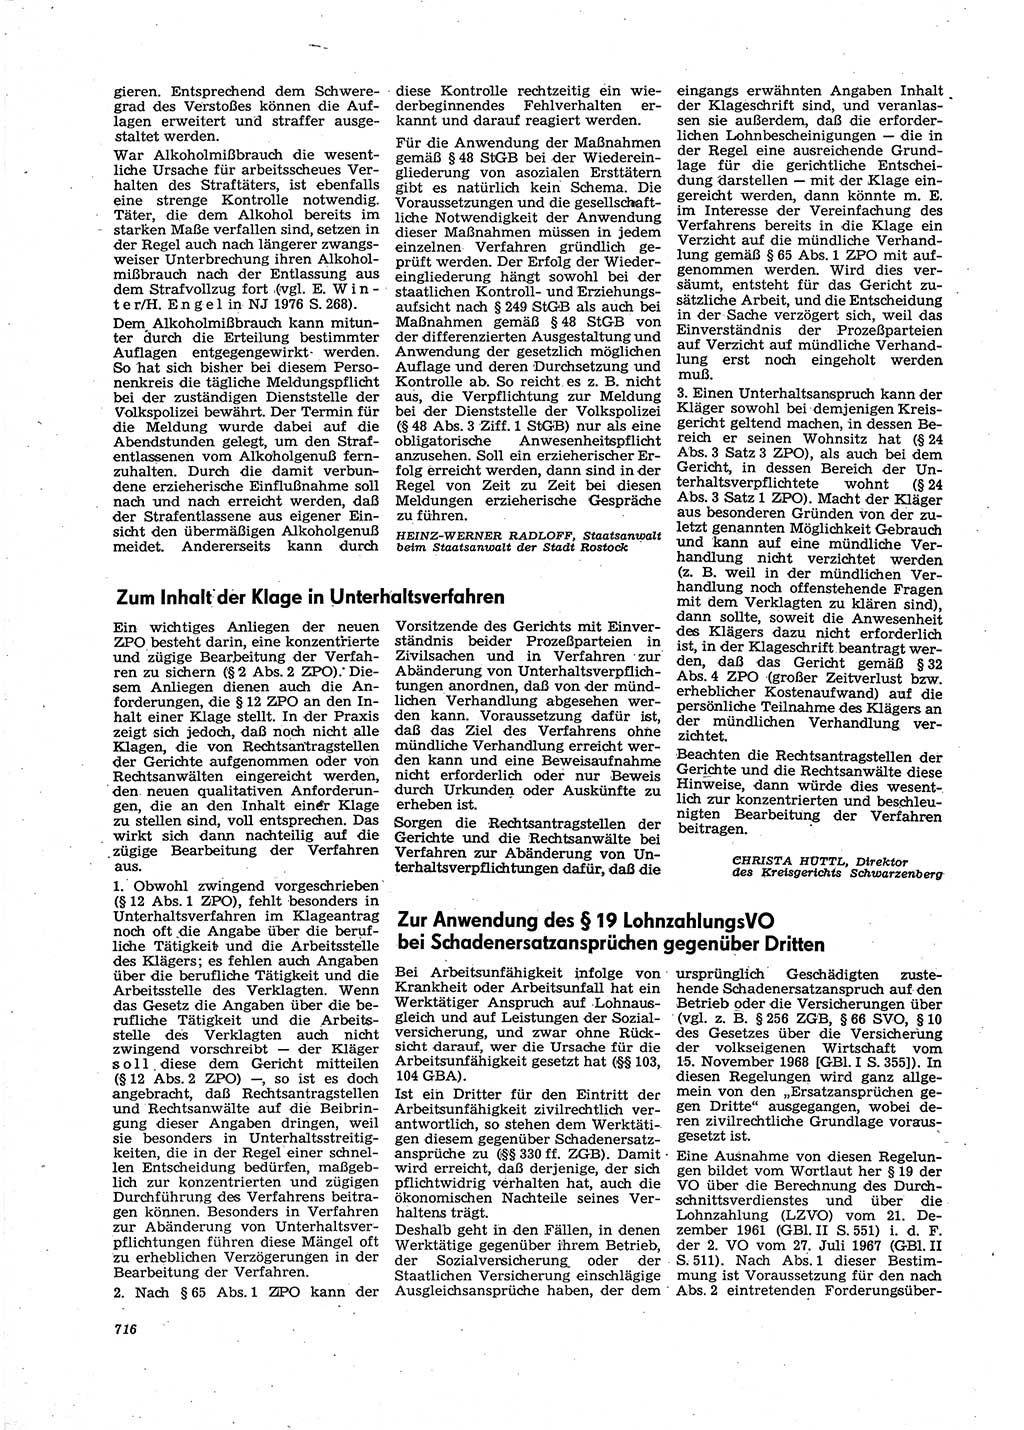 Neue Justiz (NJ), Zeitschrift für Recht und Rechtswissenschaft [Deutsche Demokratische Republik (DDR)], 30. Jahrgang 1976, Seite 716 (NJ DDR 1976, S. 716)